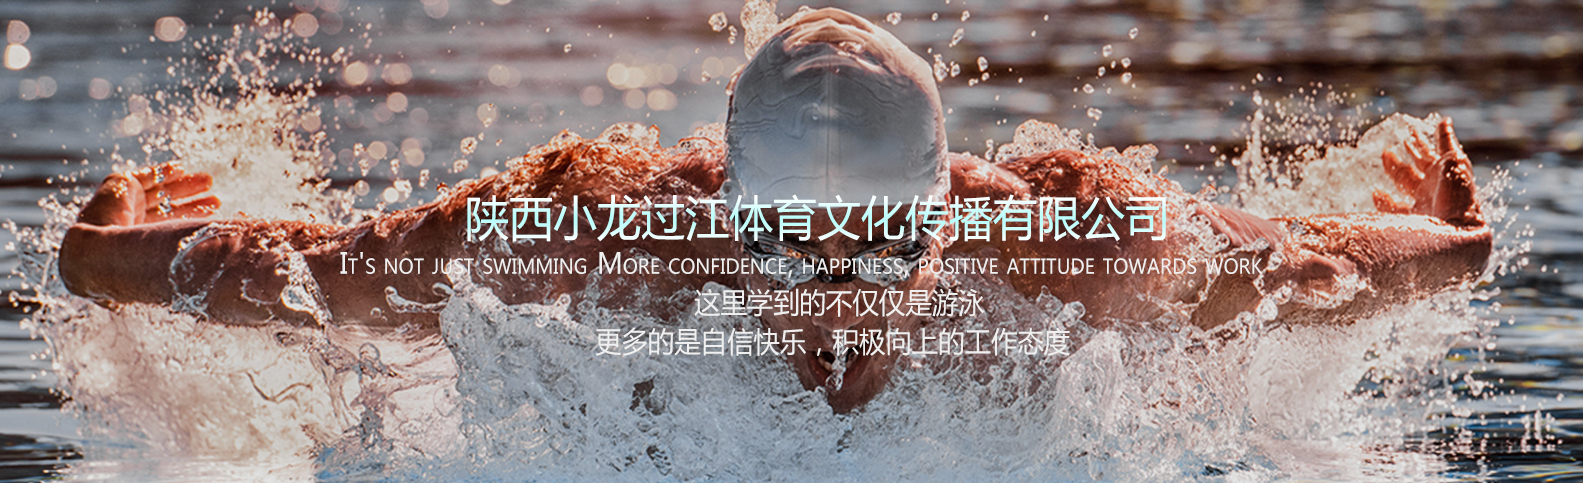 陕西儿童游泳培训解析游泳突发状况